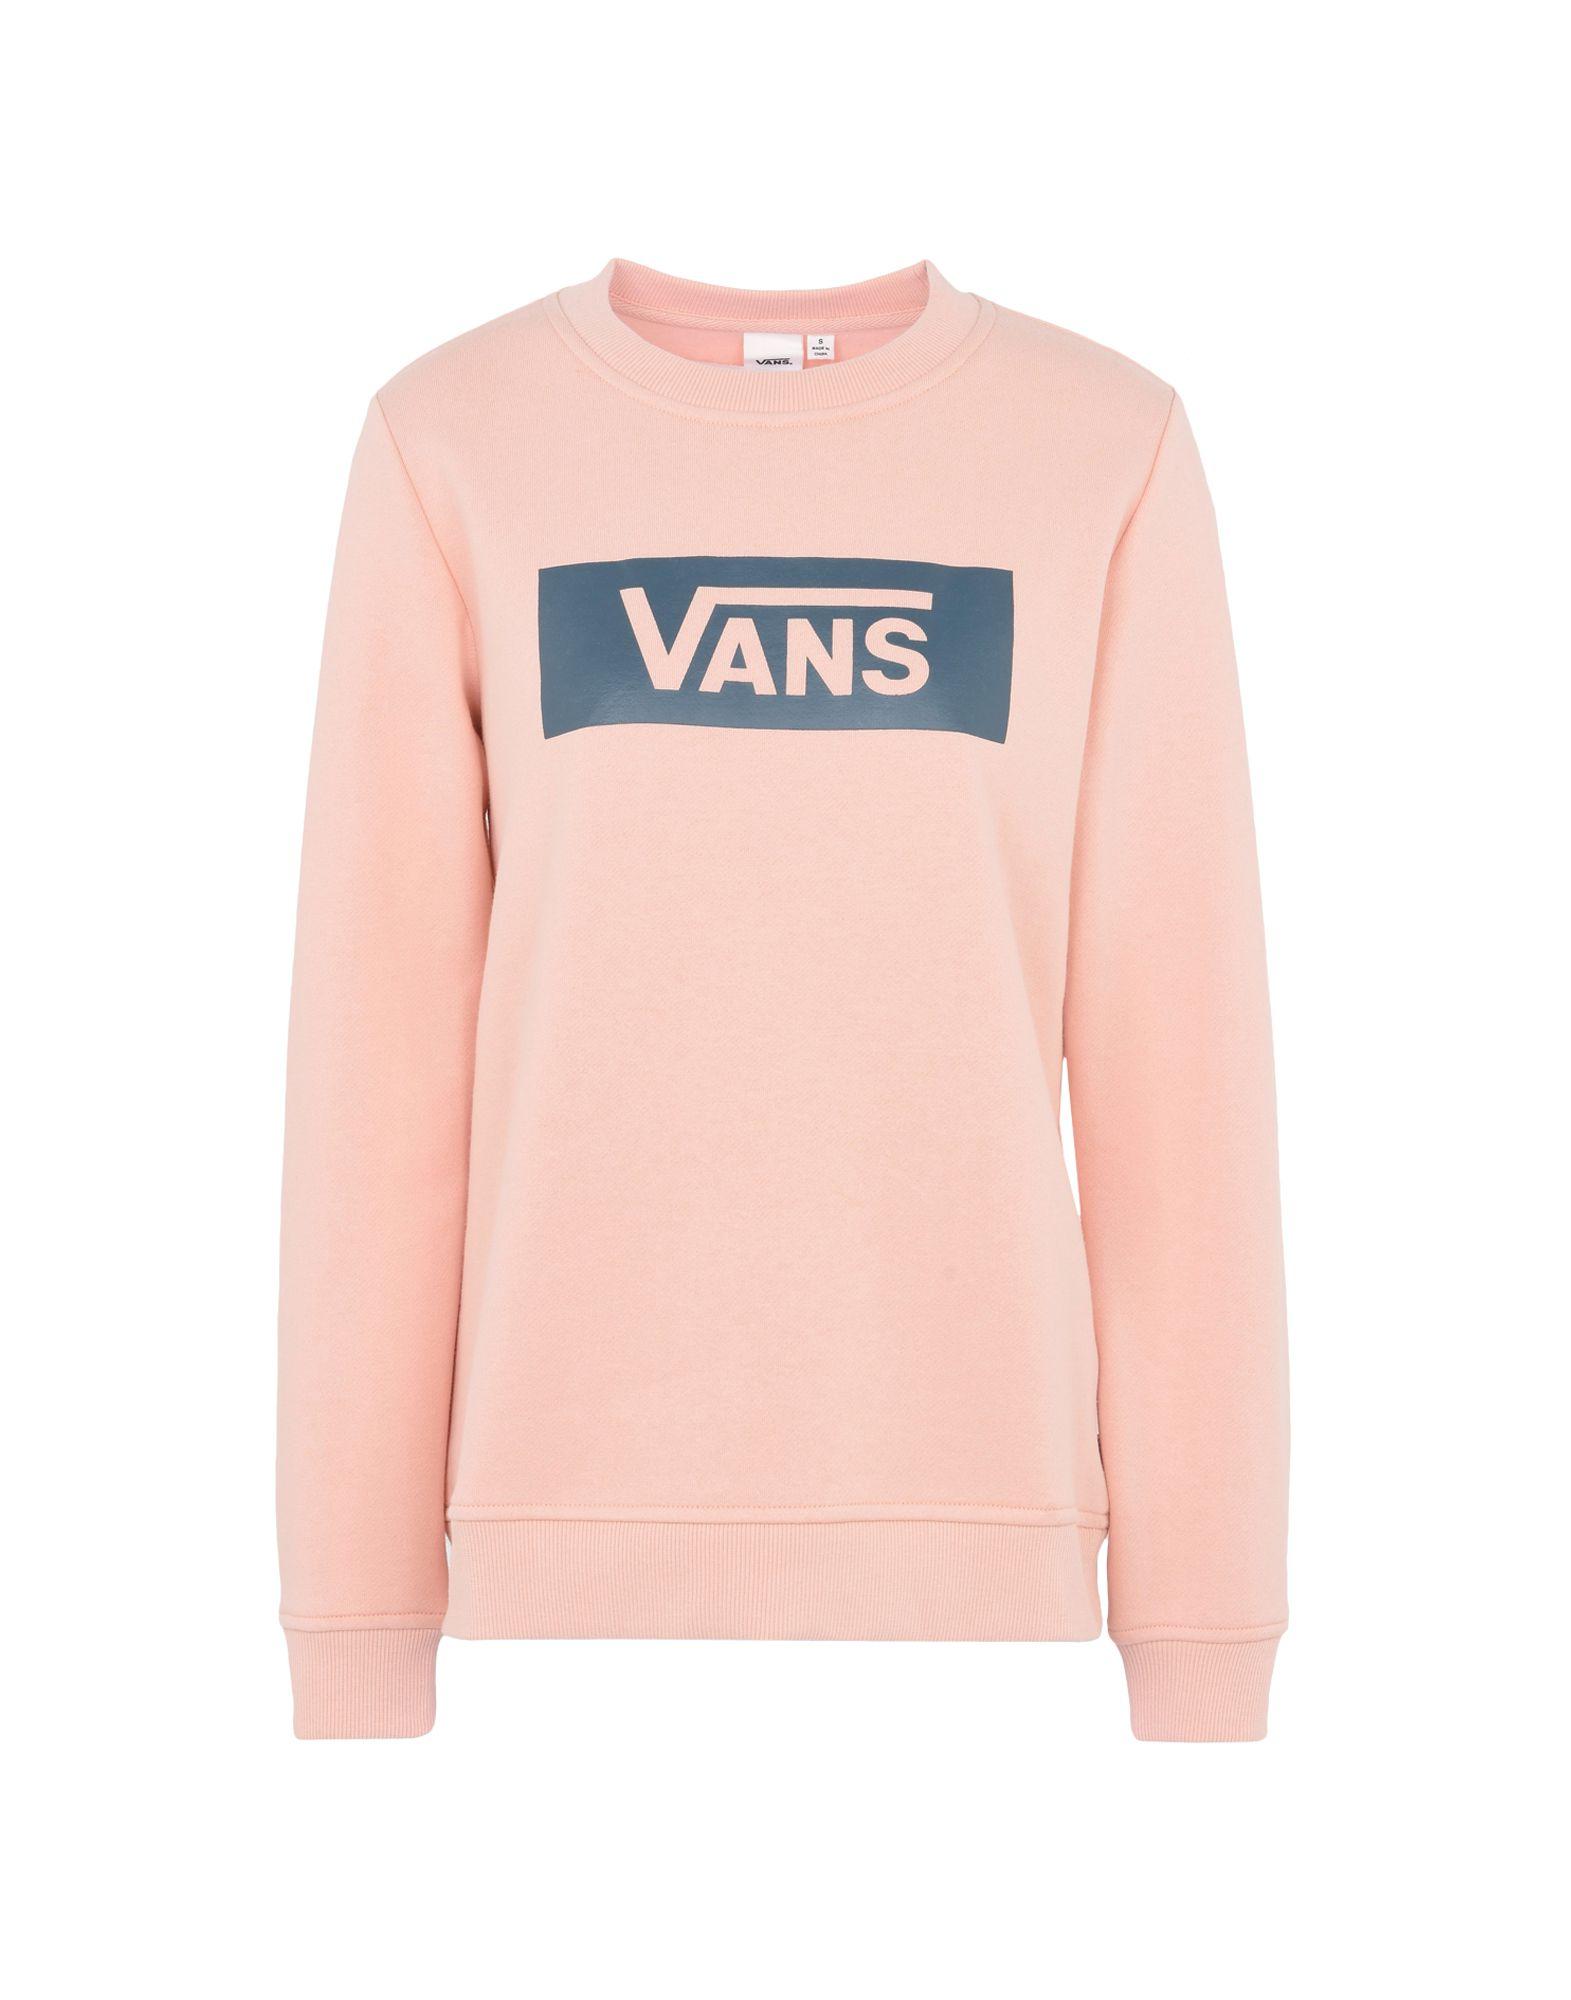 vans sweater pink